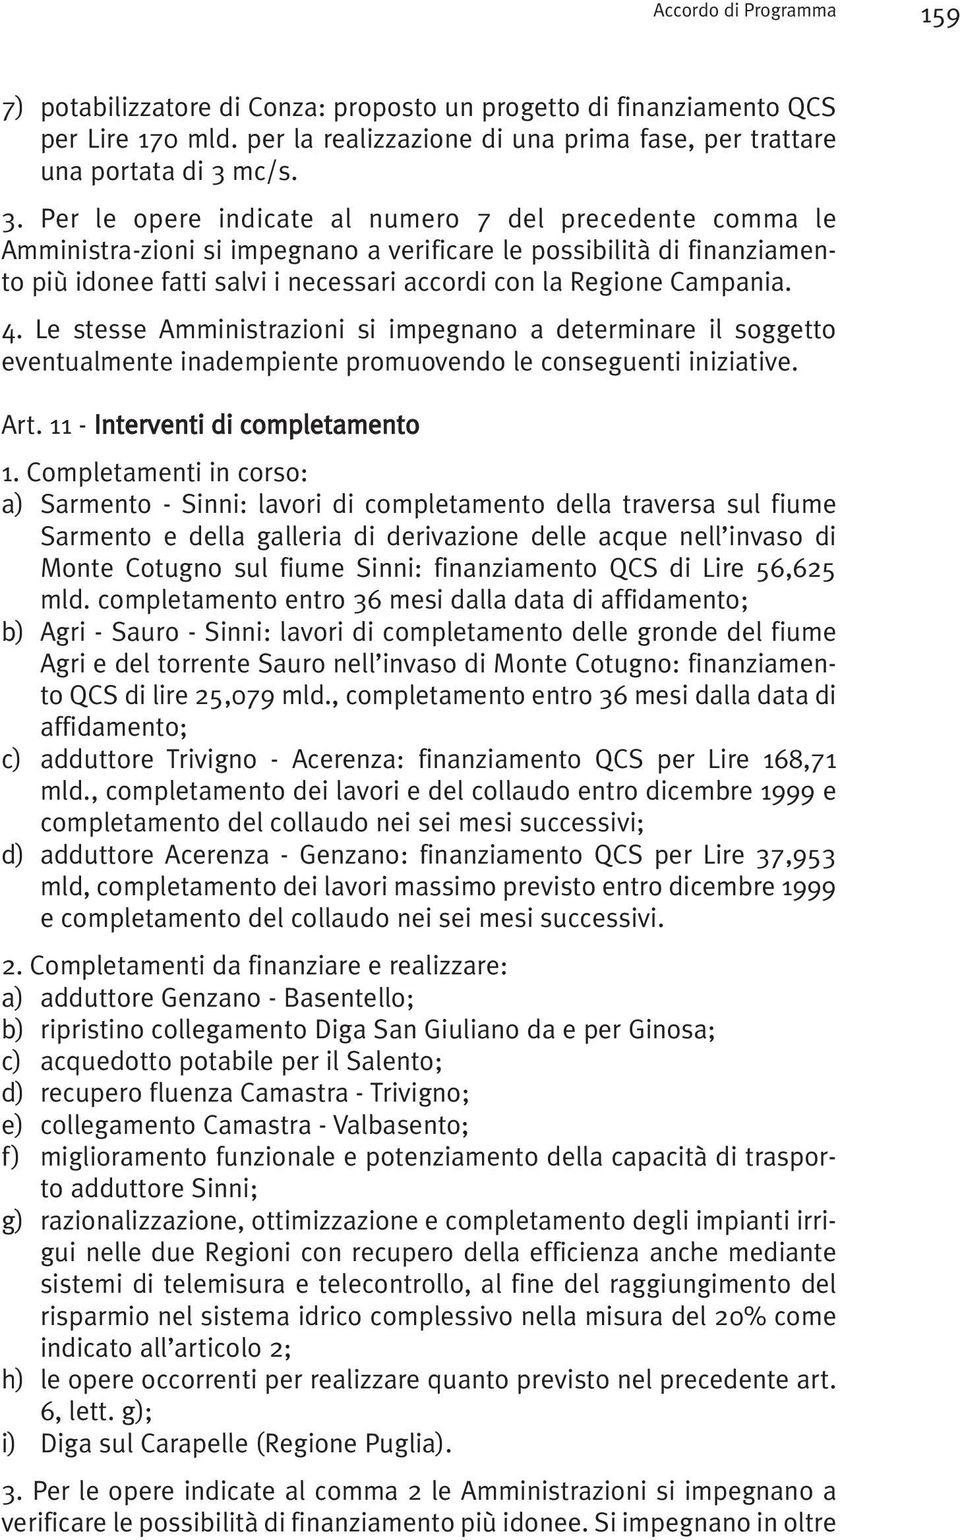 Per le opere indicate al numero 7 del precedente comma le Amministra-zioni si impegnano a verificare le possibilità di finanziamento più idonee fatti salvi i necessari accordi con la Regione Campania.